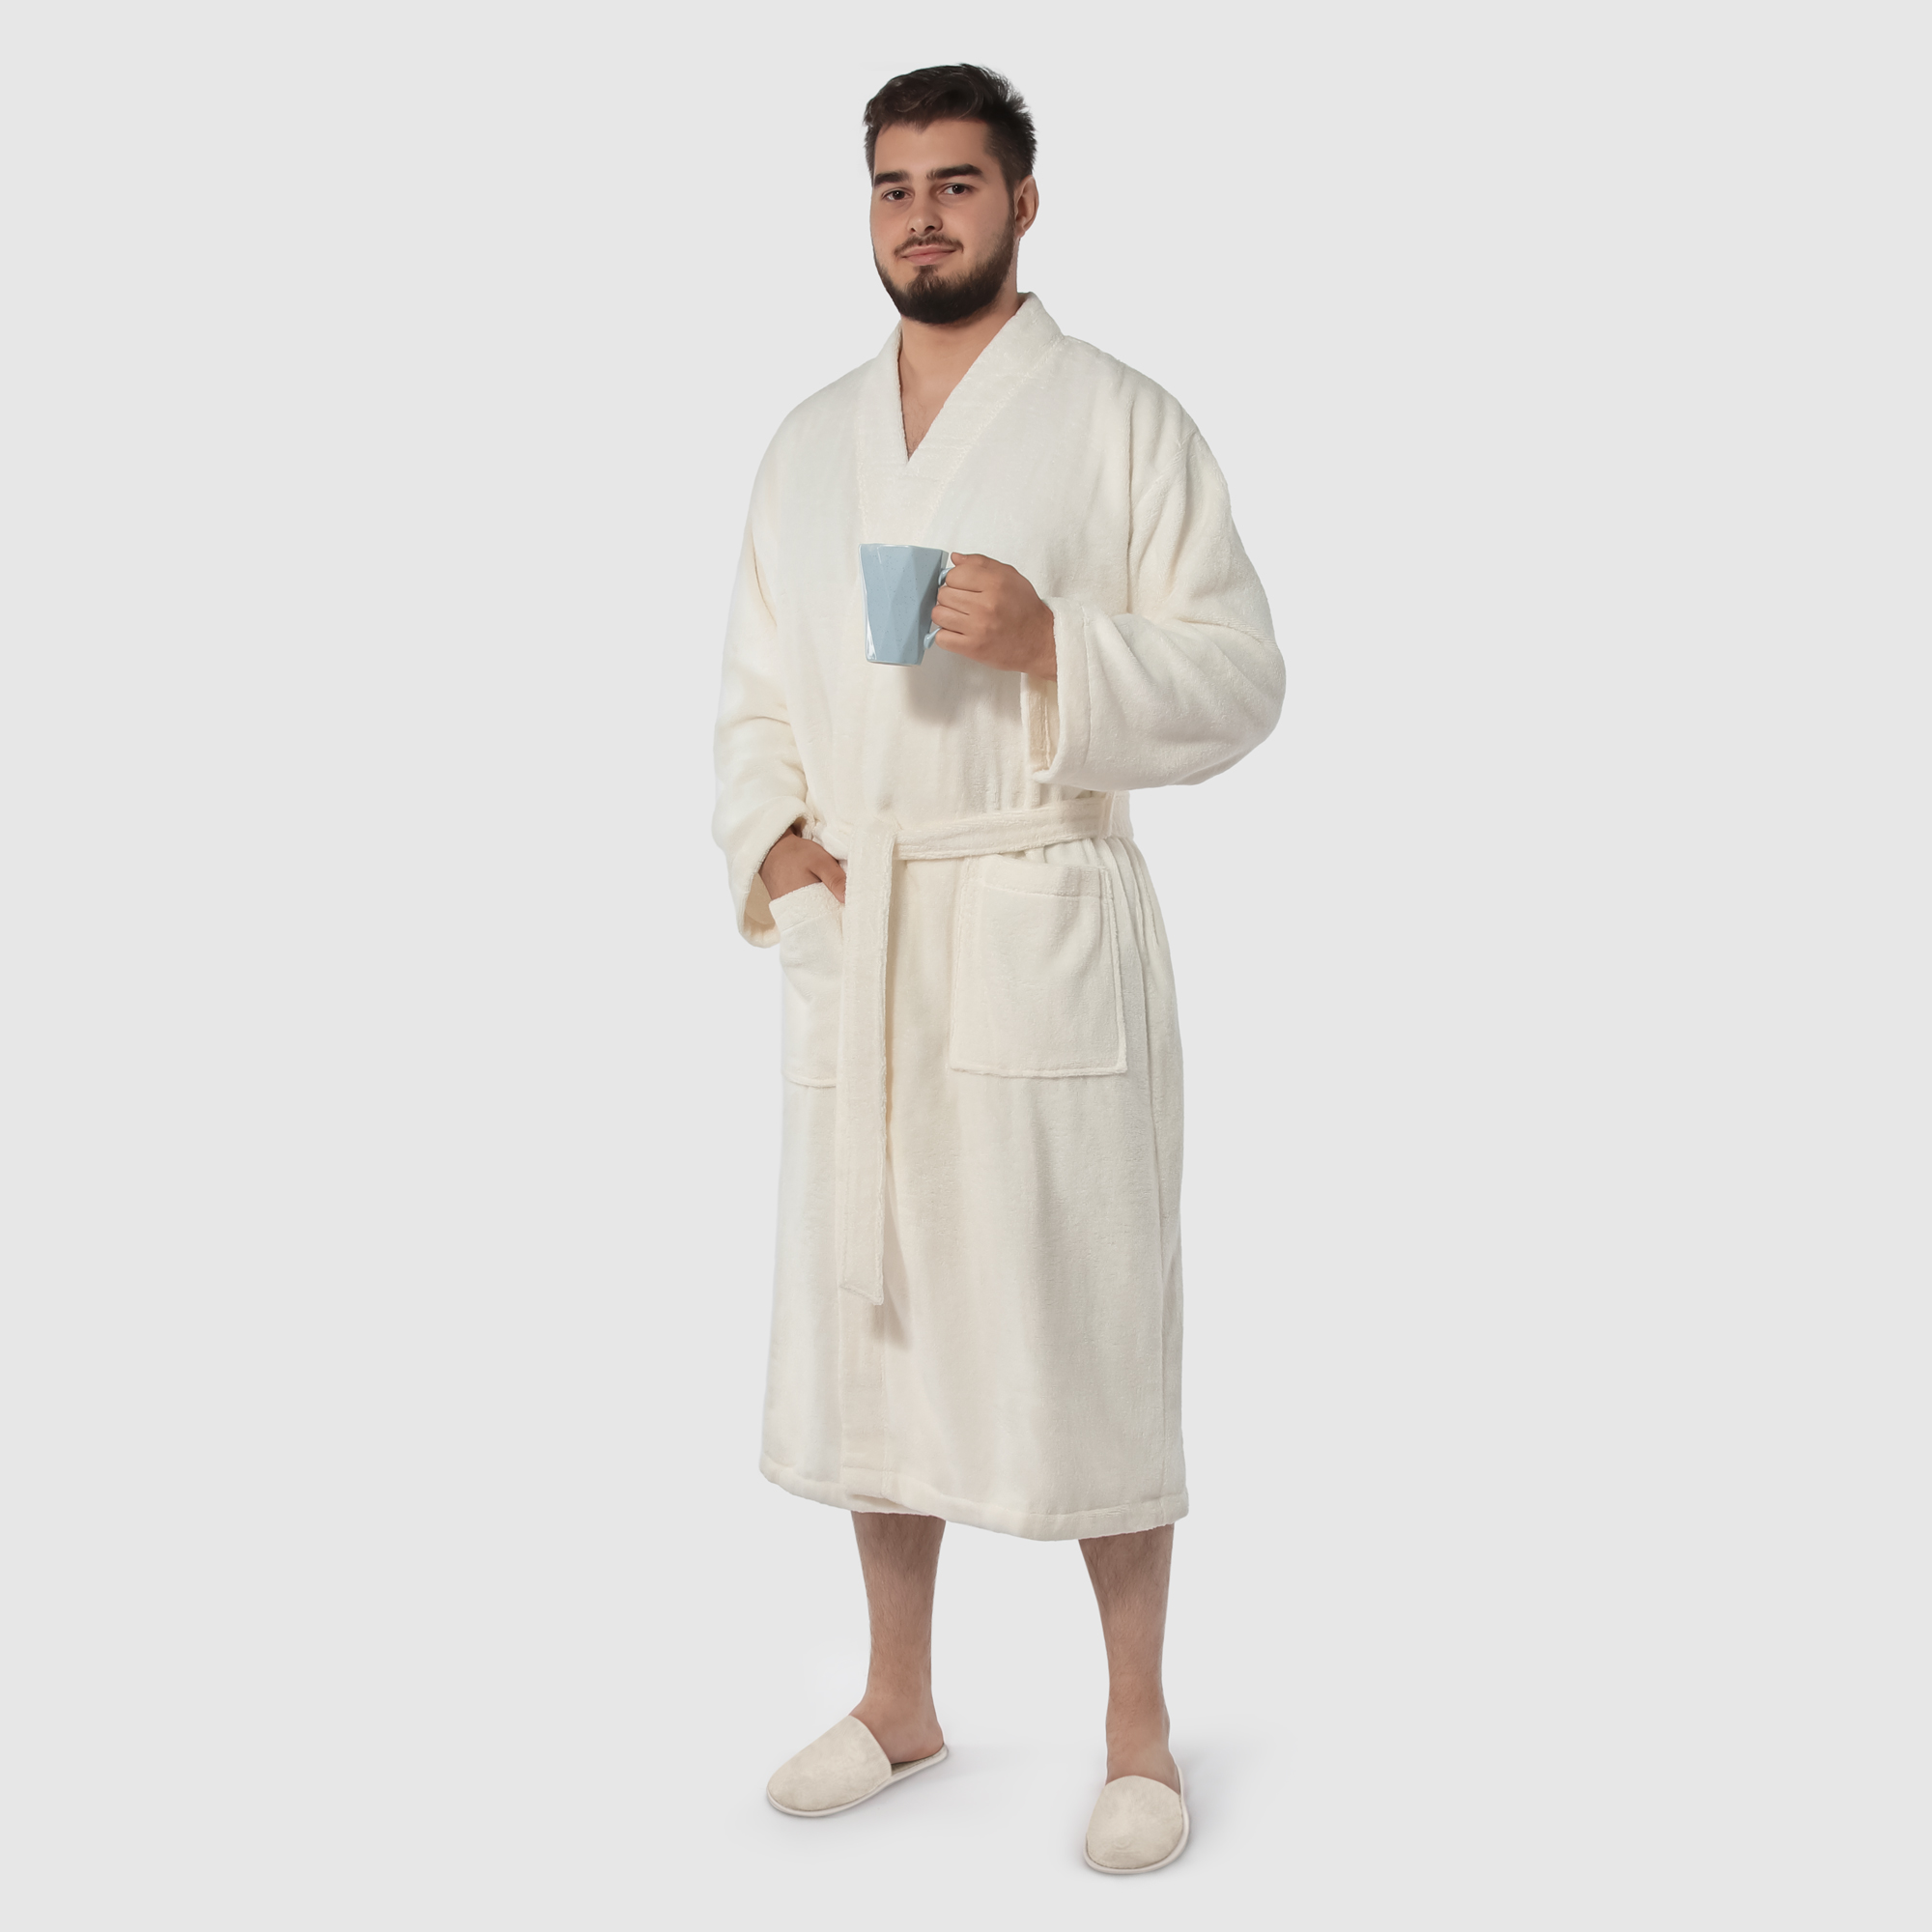 Мужской халат Maisonette Parla кремовый XL халат мужской asil sauna brown xl вафельный с капюшоном